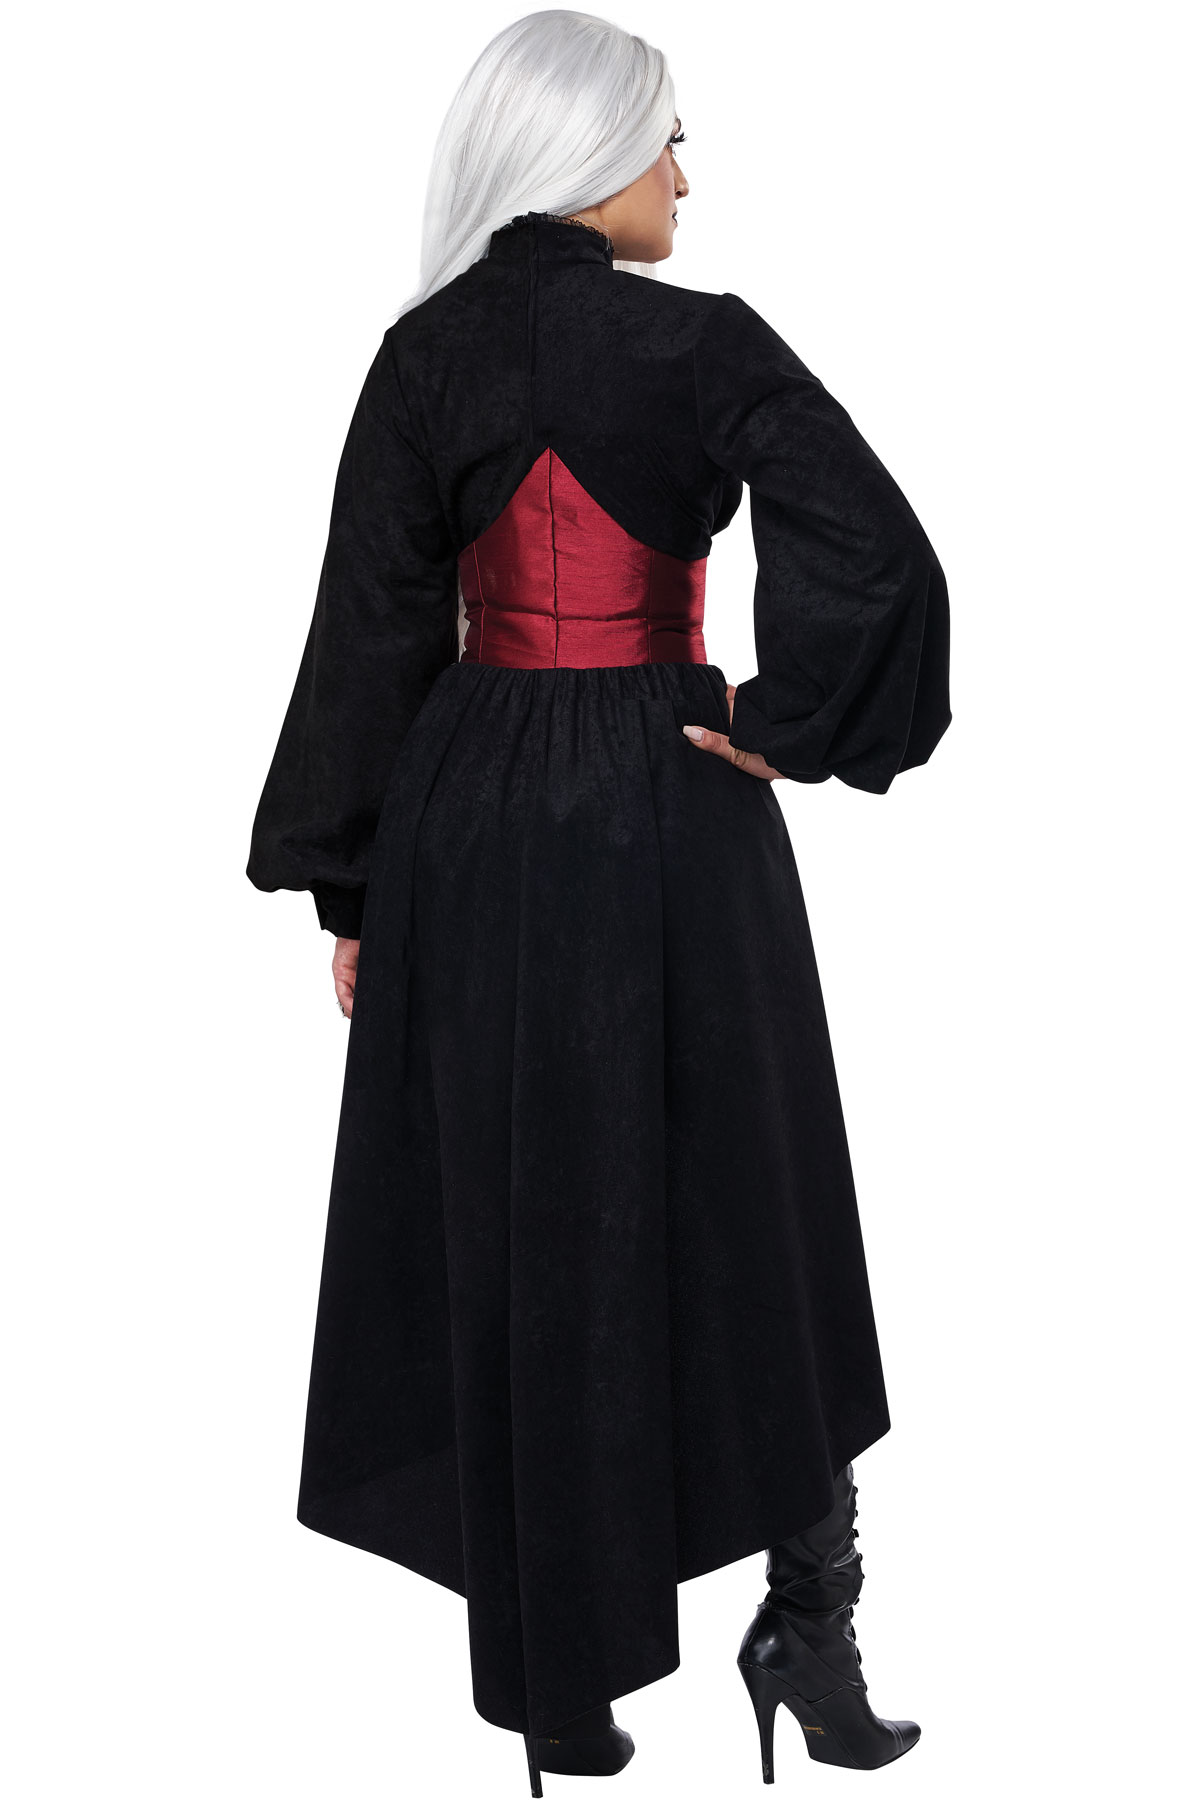 VAMPIRE CORSET COAT / ADULT - California Costumes